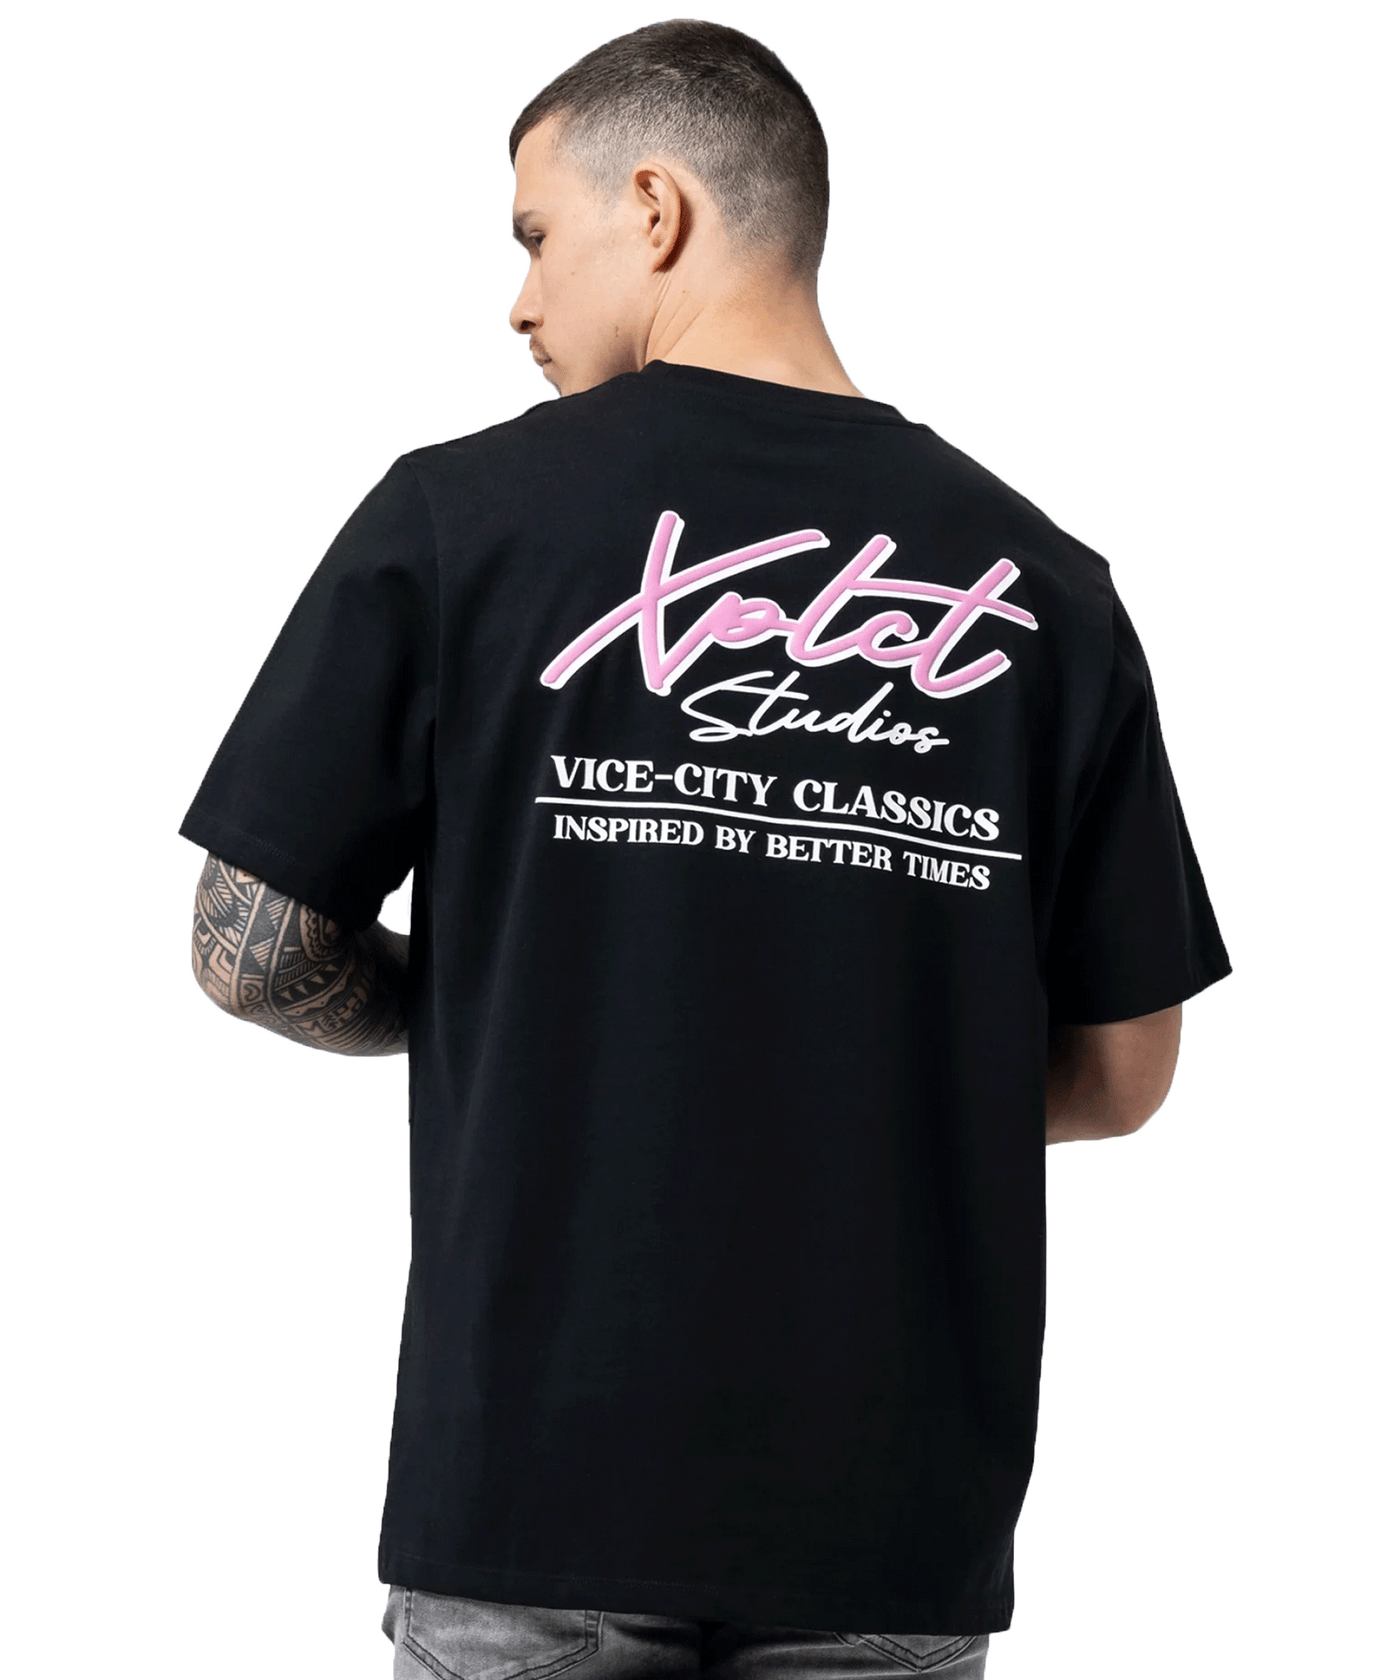 XPLCT STUDIOS - Vice- T-shirt - Black